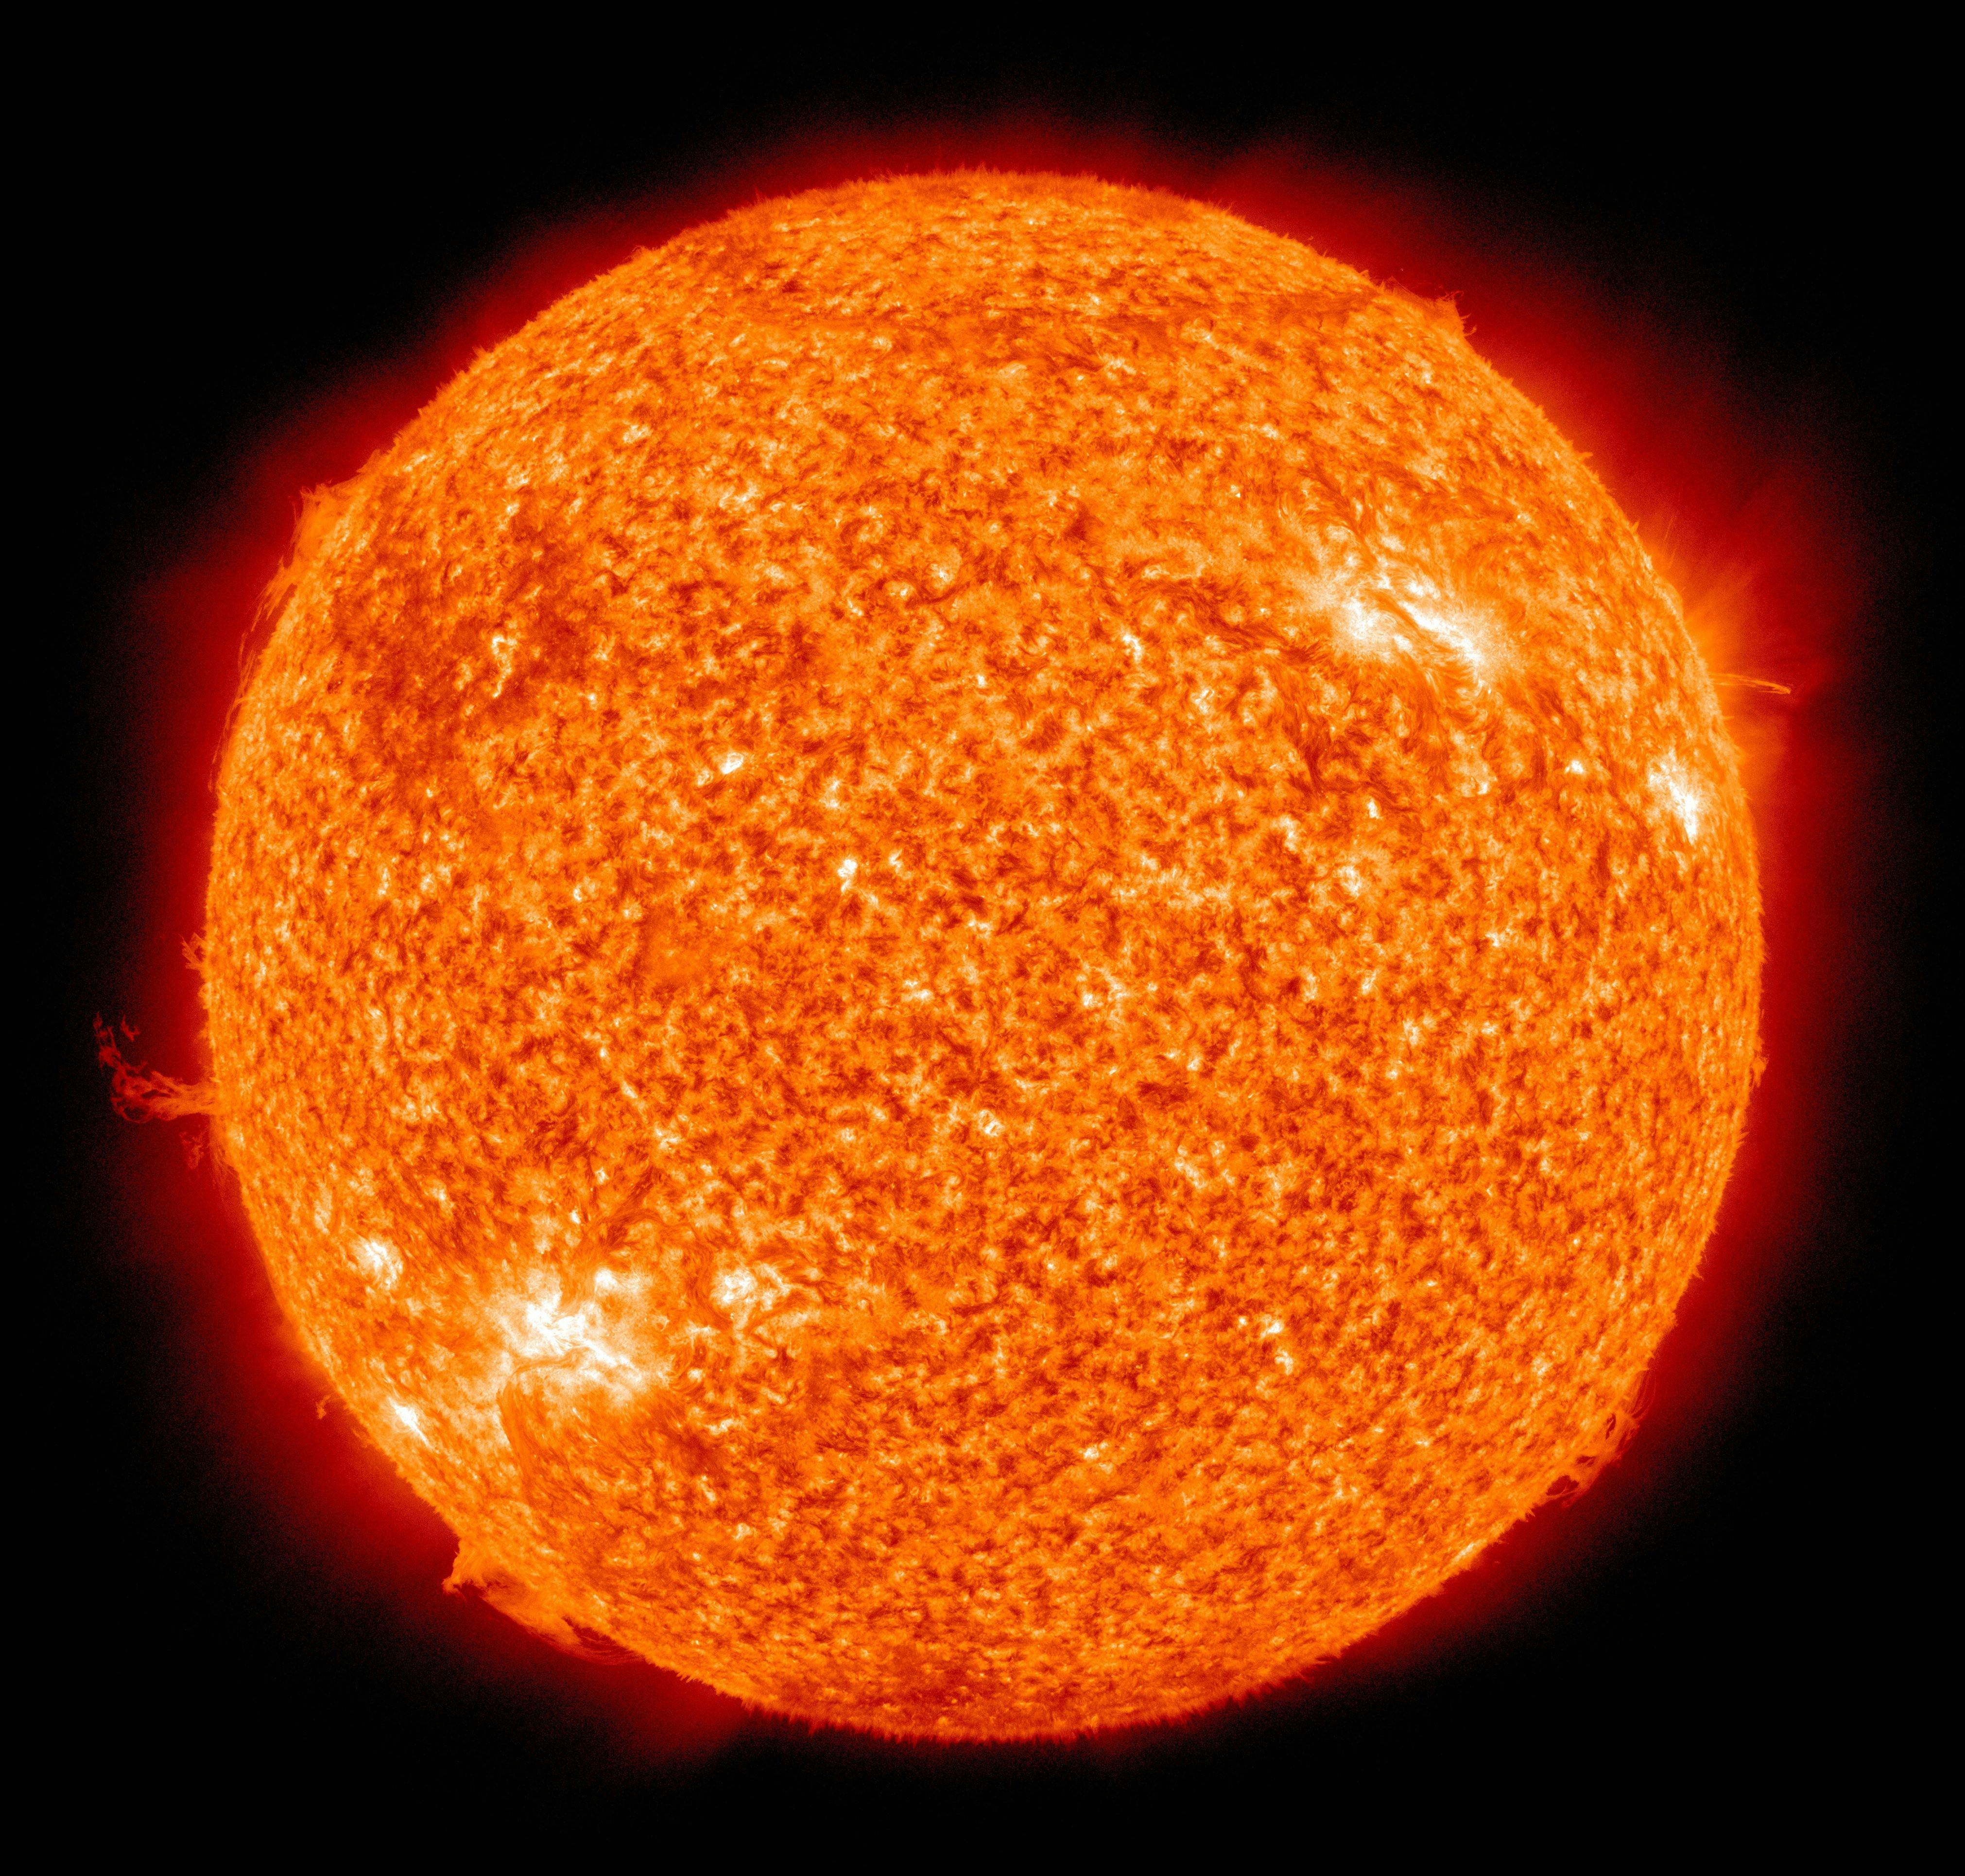 画像 太陽 画像 太陽 無料素材 No Date 18 10 17 11 35 27 毎日更新 ふりすと は 無料の動画 写真 音楽や効果音の素材ダウンロードサイト